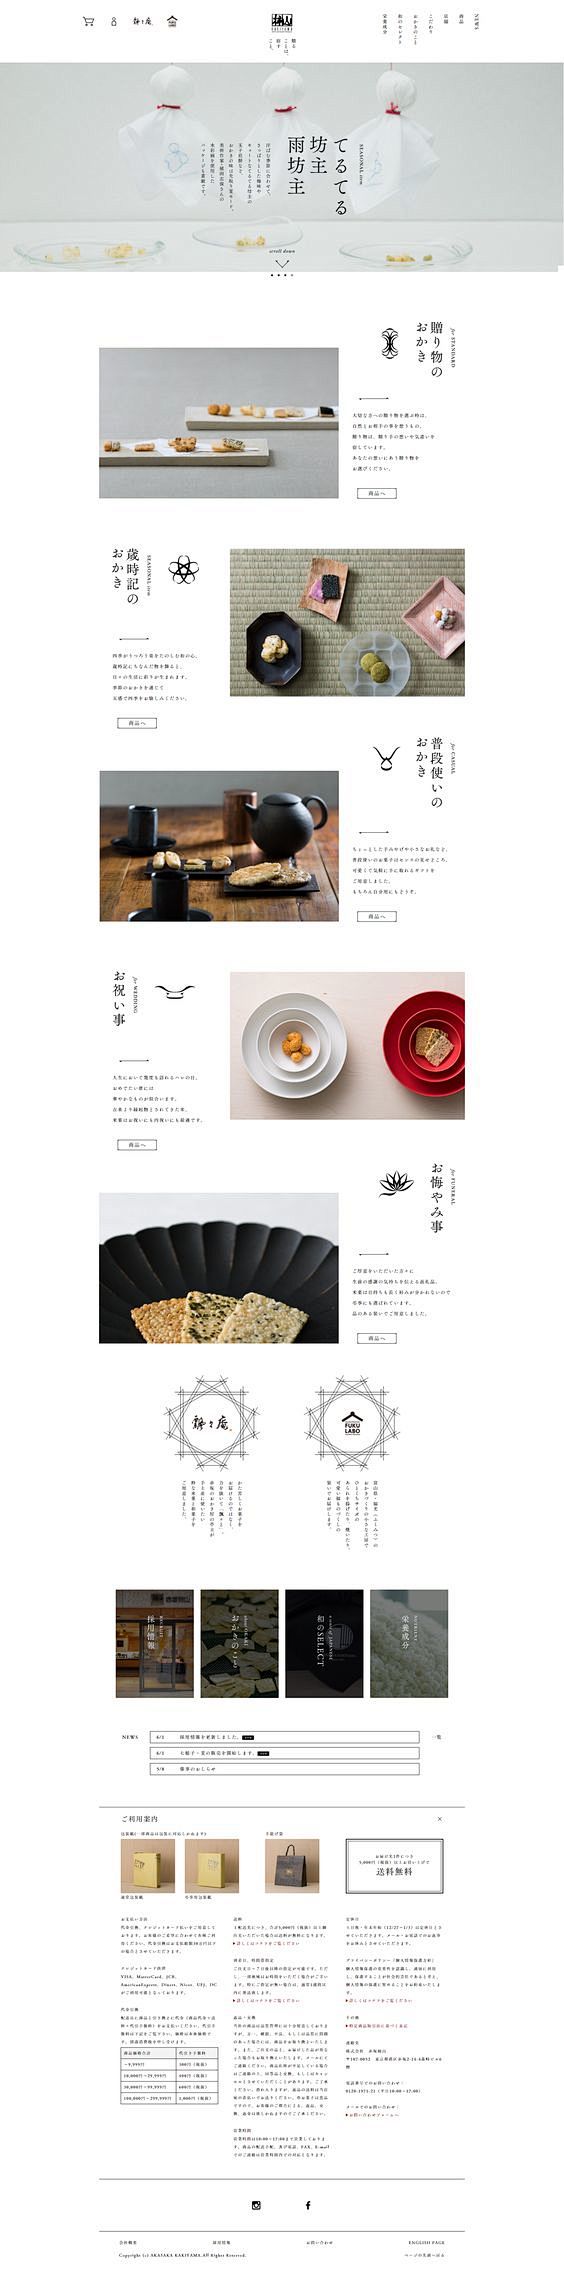 日式网页设计 排版